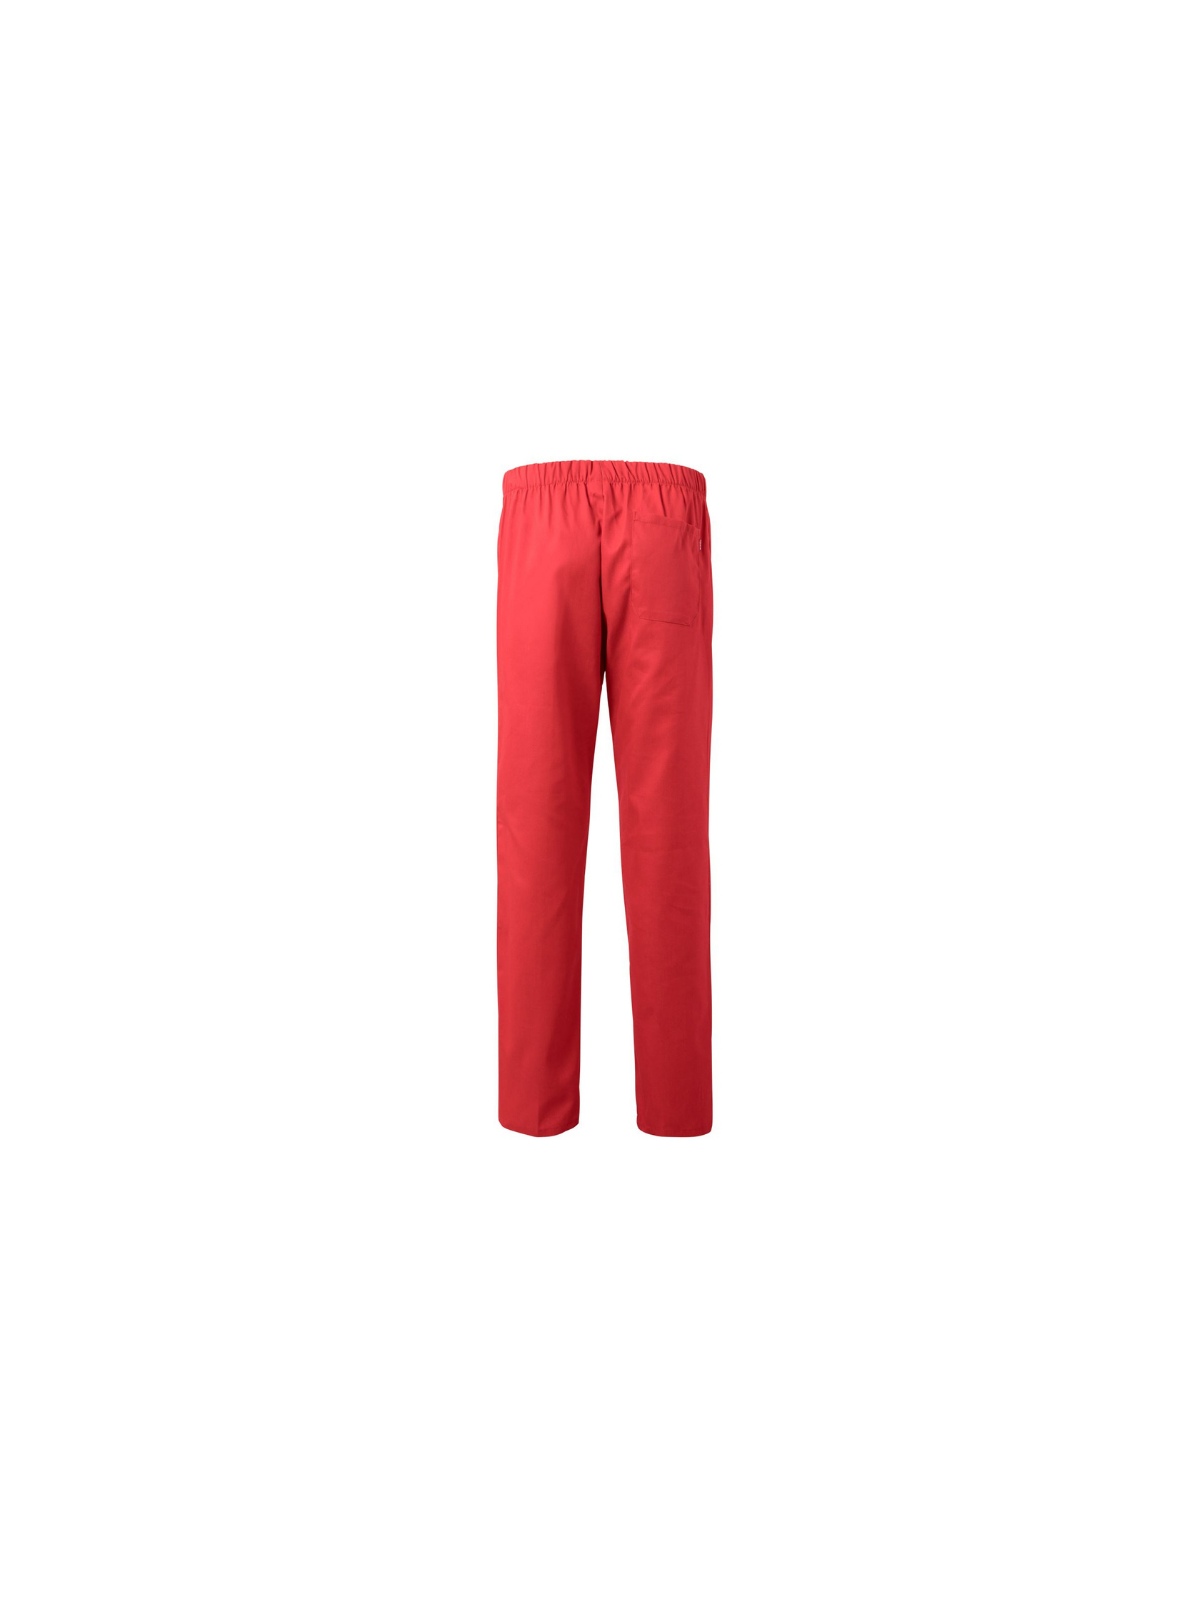 Pantalón uniforme  Velilla rojo coral